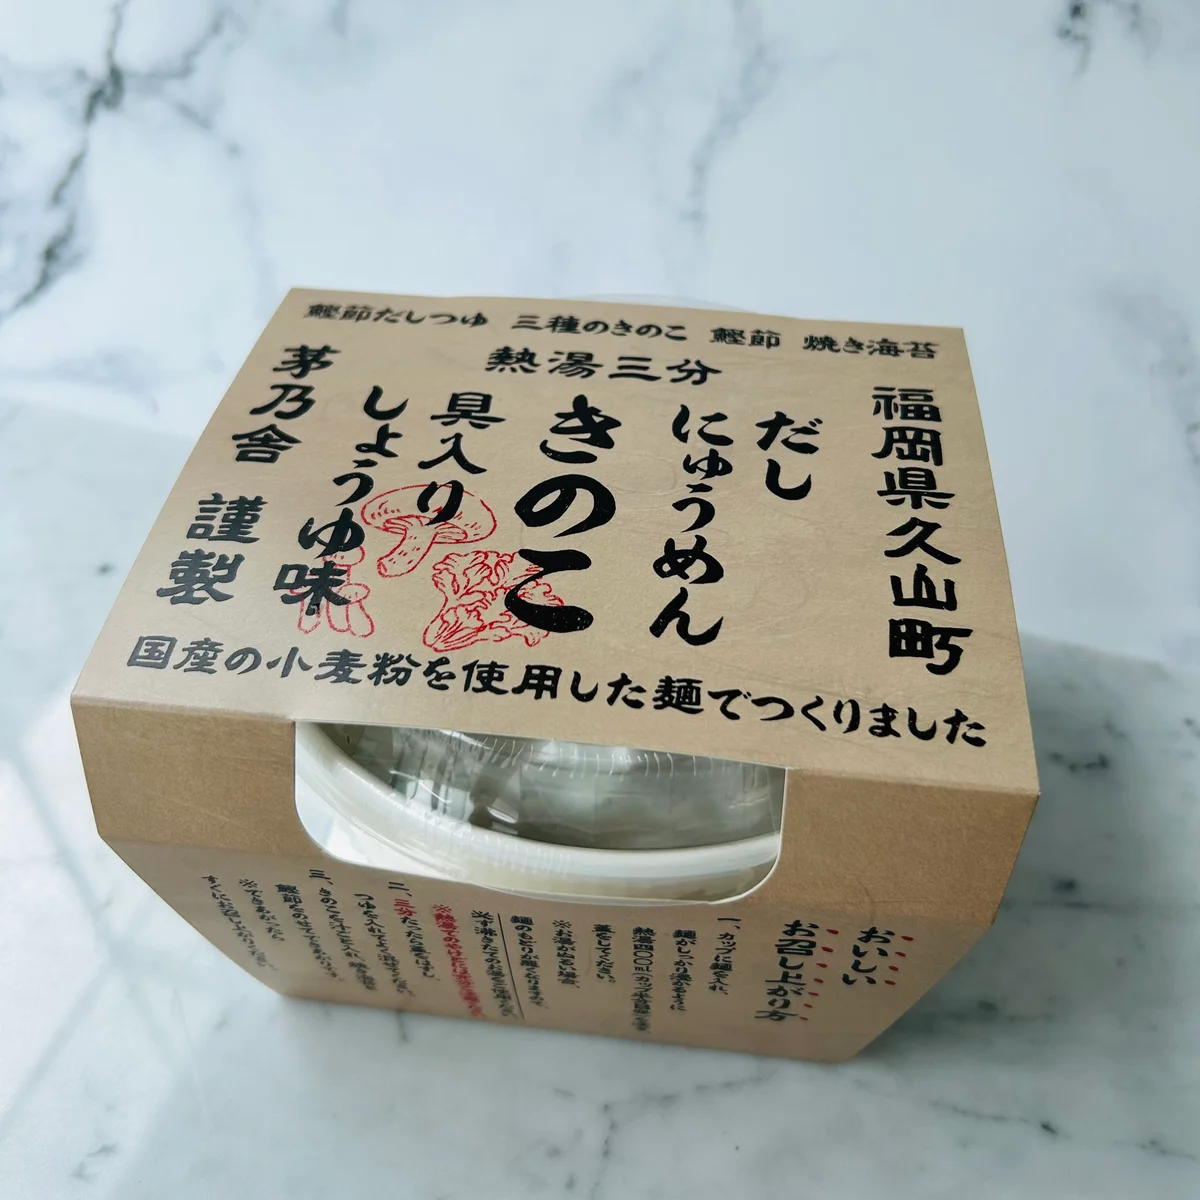 茅乃舎のカップ麺のパッケージの写真